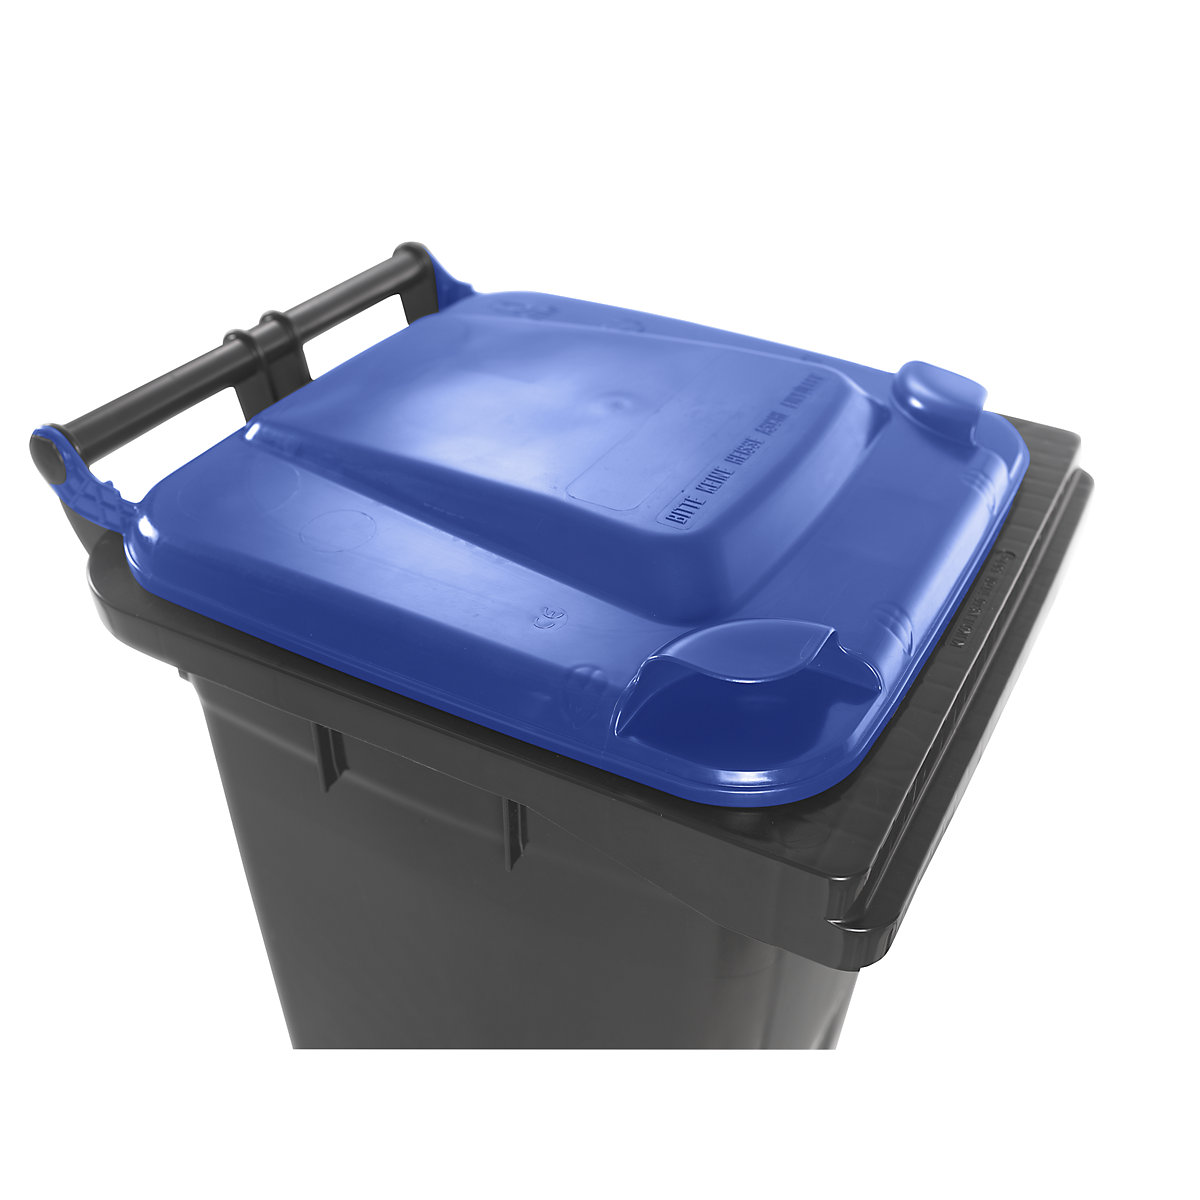 Contentor de lixo conforme a norma DIN EN 840 (Imagem do produto 11)